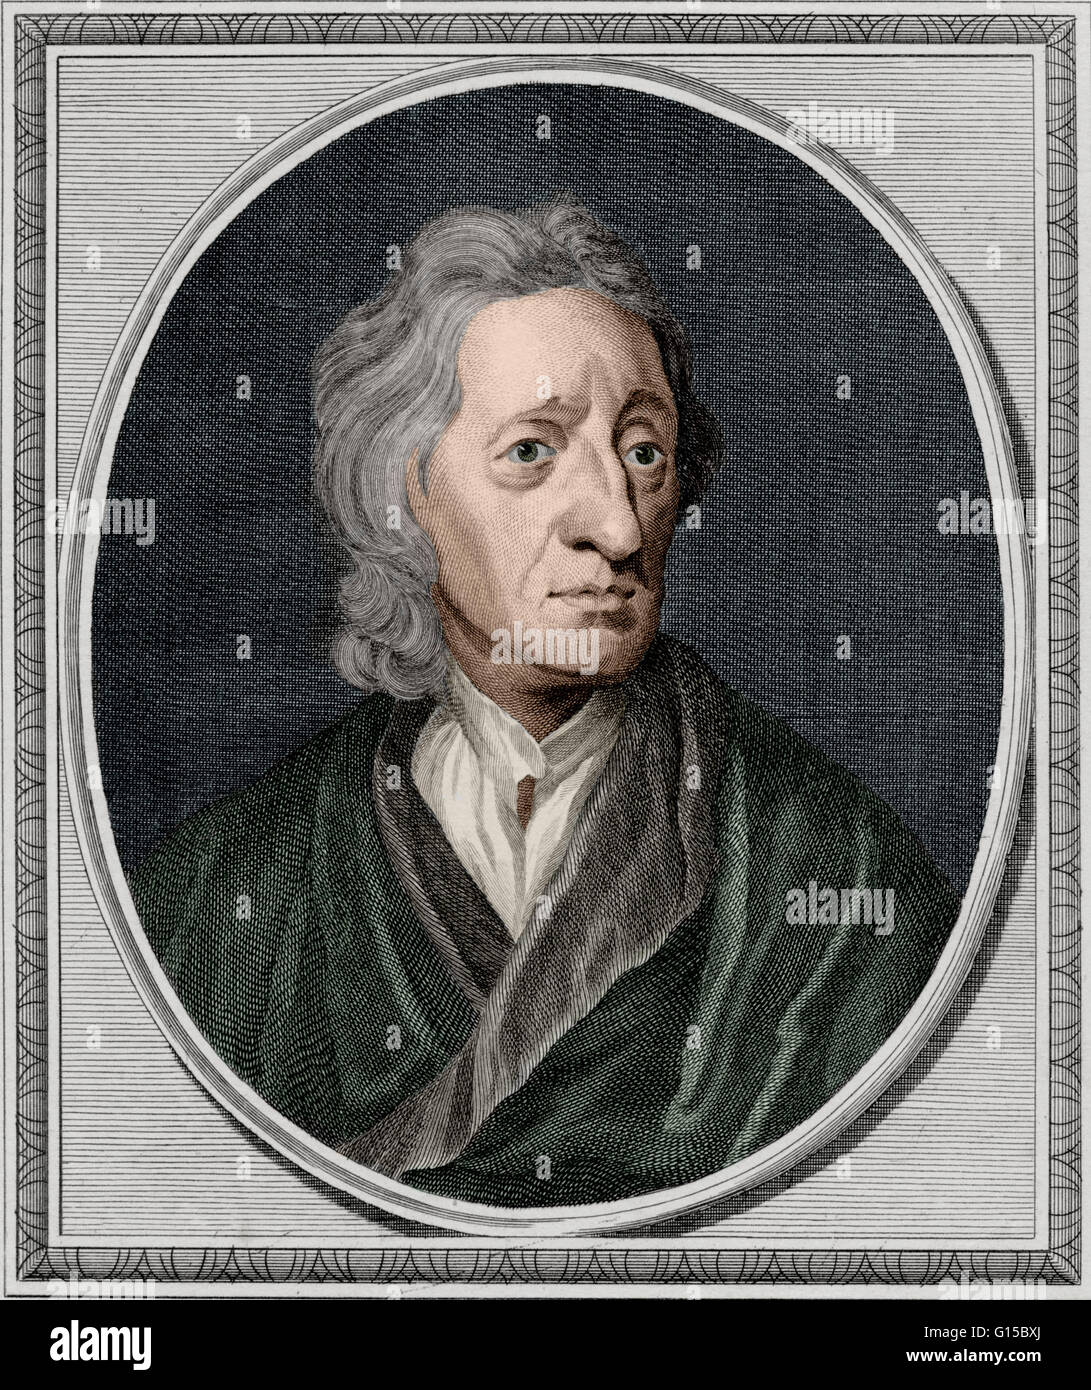 Un grabado de John Locke desde 1786. John Locke (1632-1704) fue un filósofo inglés que pasó sus primeros años como profesor en la Universidad de Oxford, Inglaterra. Posteriormente pasó 15 años en Francia, donde conoció a la mayoría de los líderes científicos y Continental Foto de stock